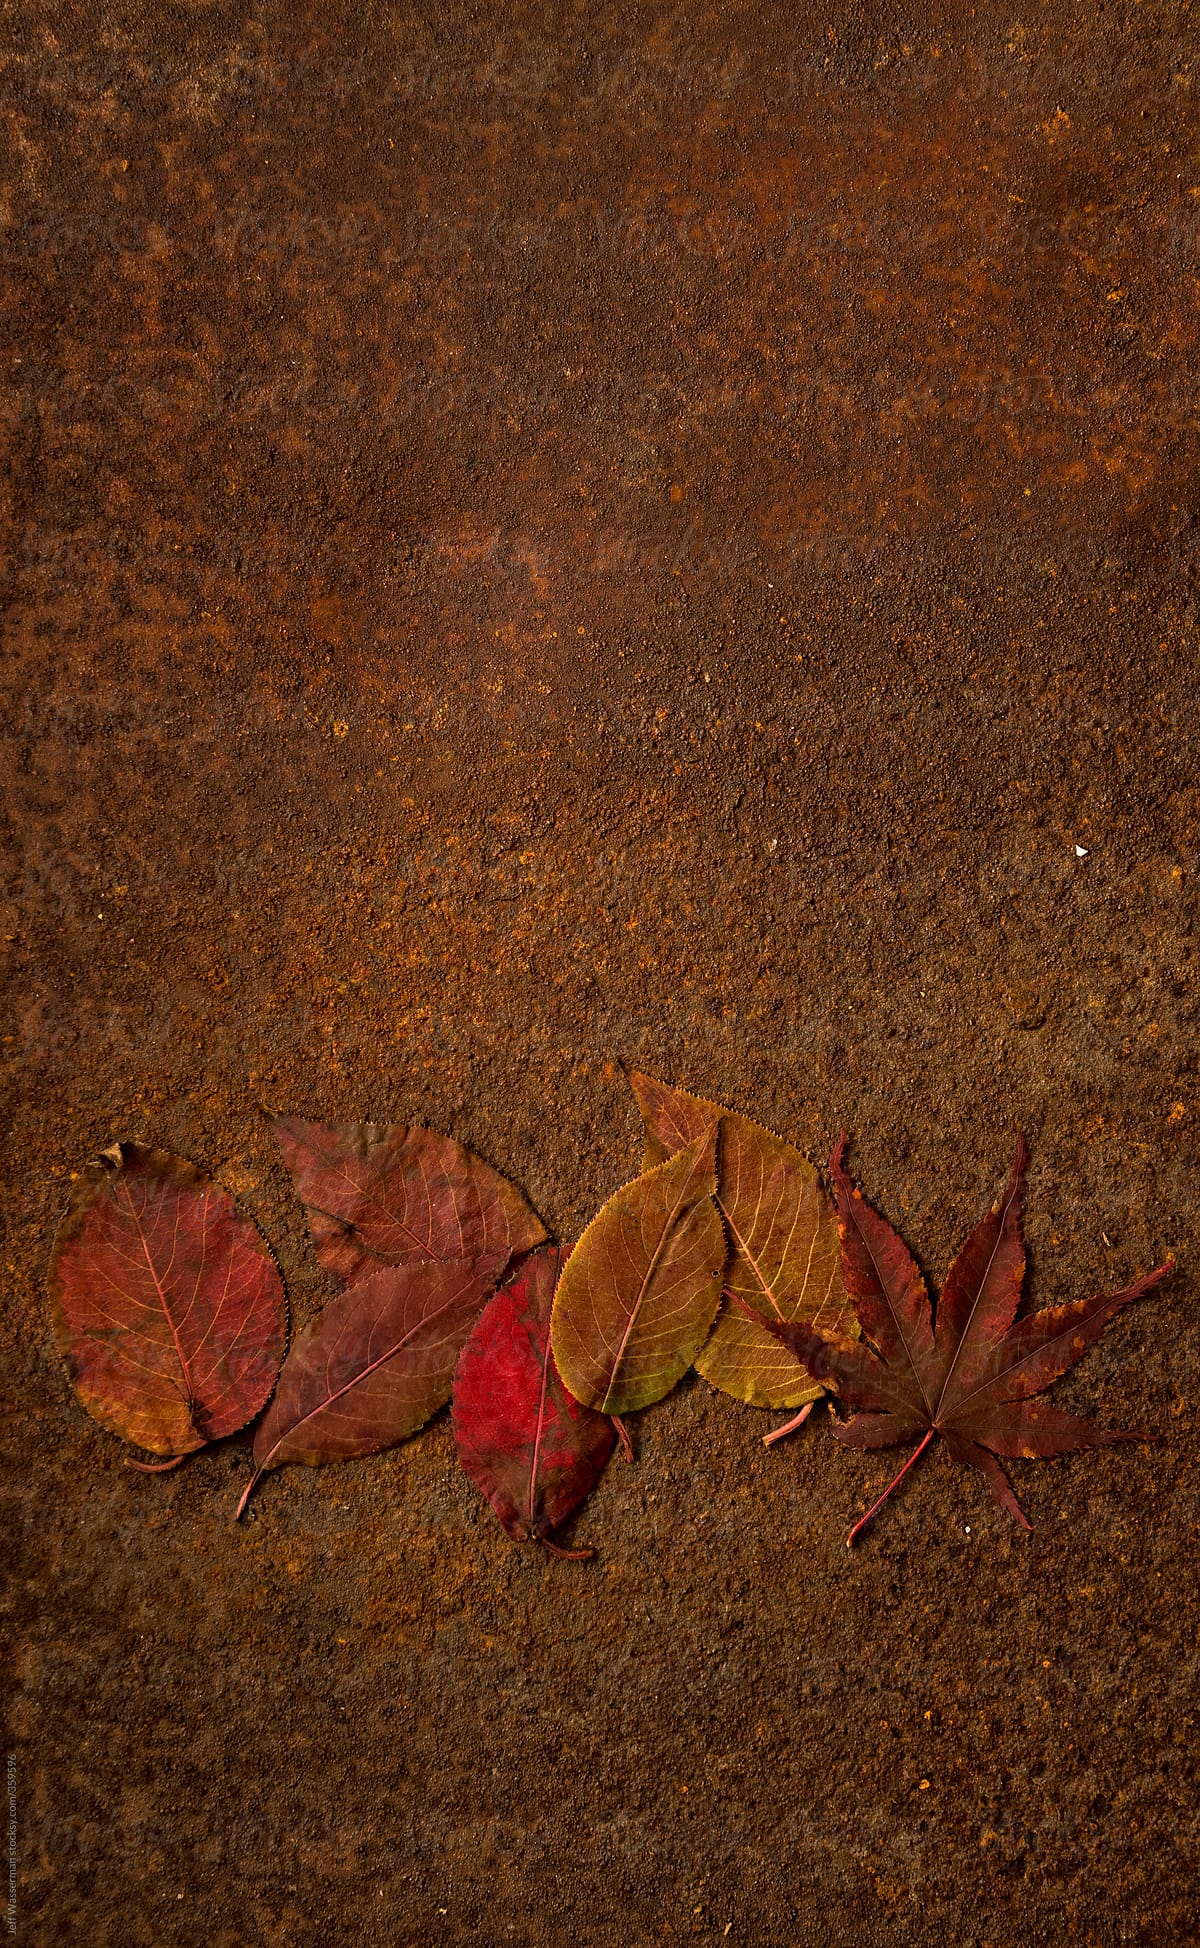 Autumn Leaves Arranged on Rusted Metal